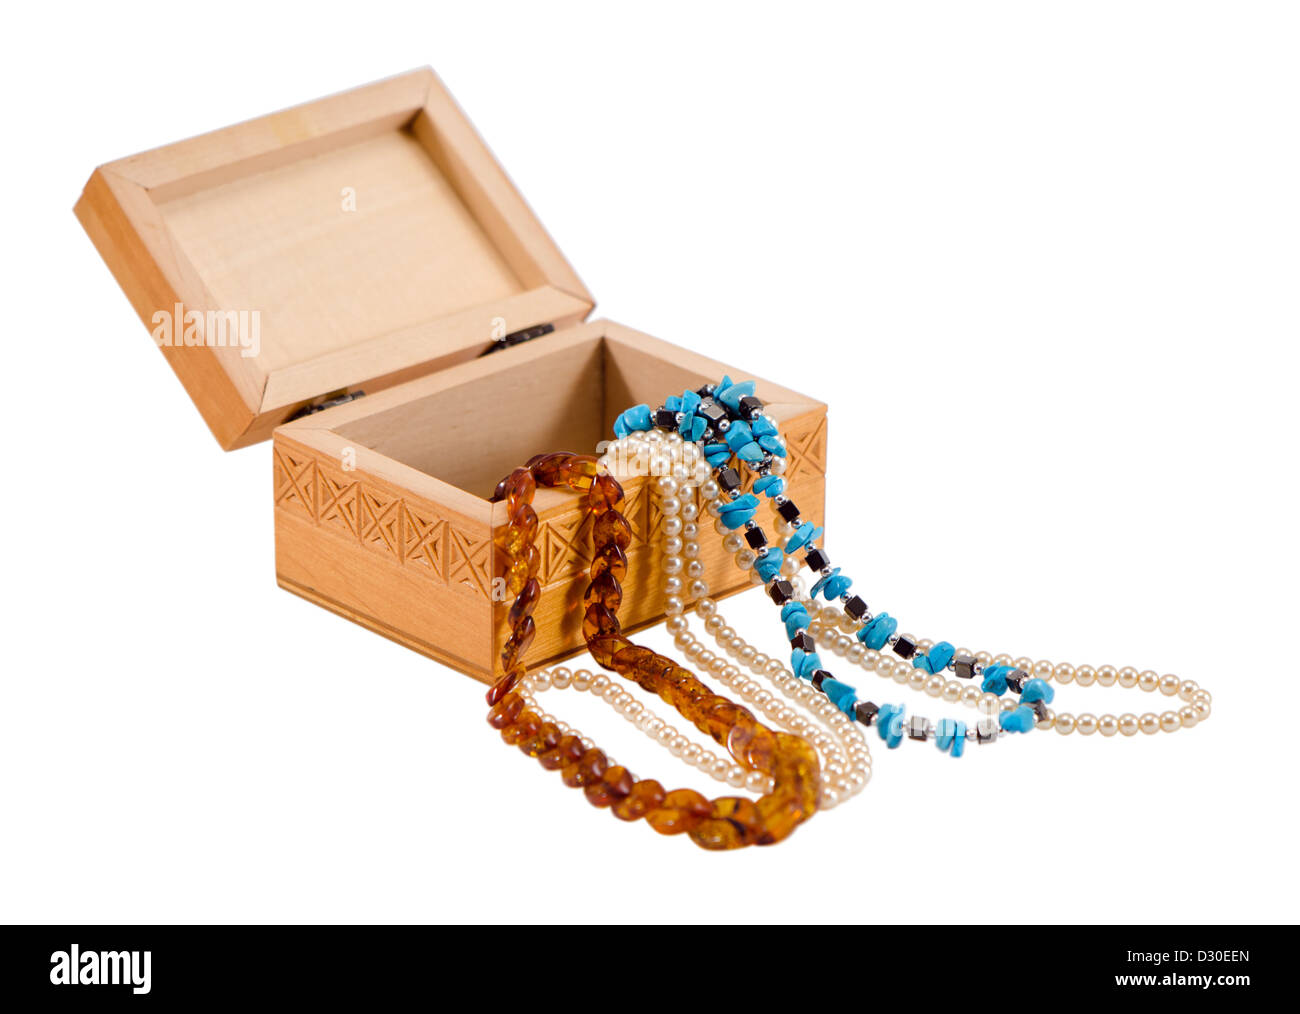 Ambra collana di perle abbigliamento gioielli in cassetta di legno isolato su sfondo bianco Foto Stock